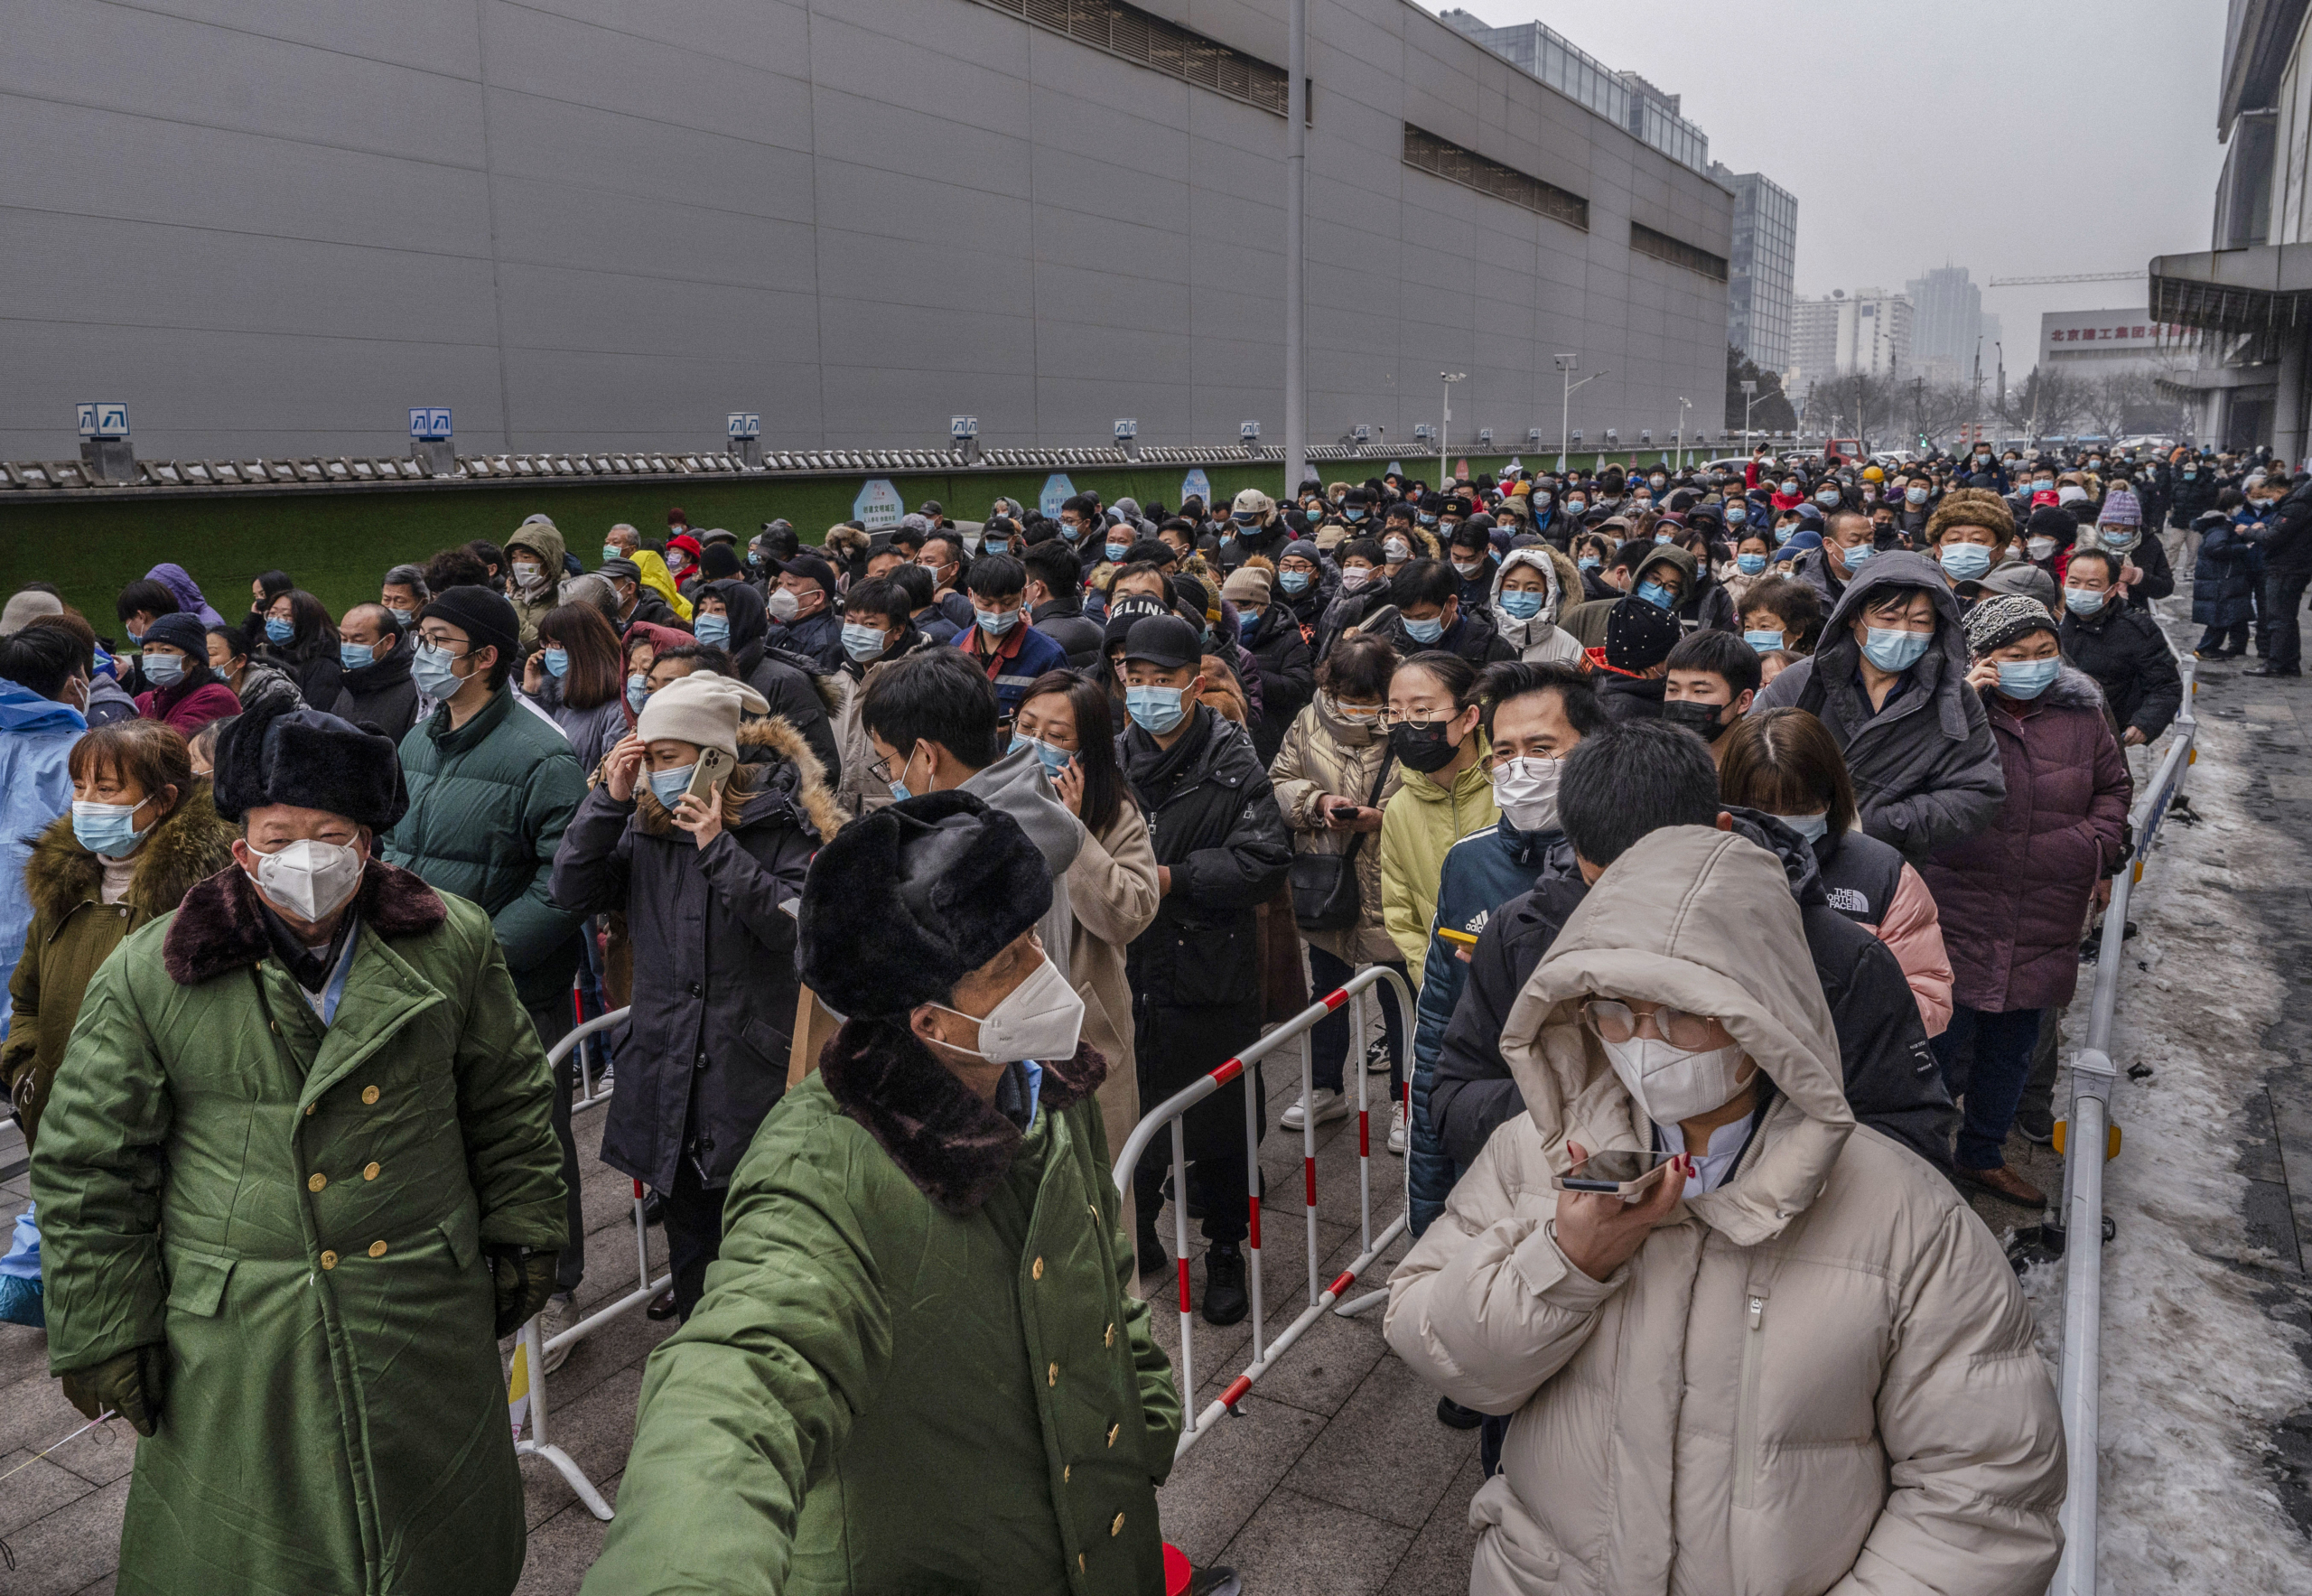 Các nhân viên an ninh đứng trước hàng dài người chờ xét nghiệm COVID-19 tại một địa điểm xét nghiệm hàng loạt ở Bắc Kinh, vào ngày 24/01/2022. (Ảnh: Kevin Frayer/Getty Images)